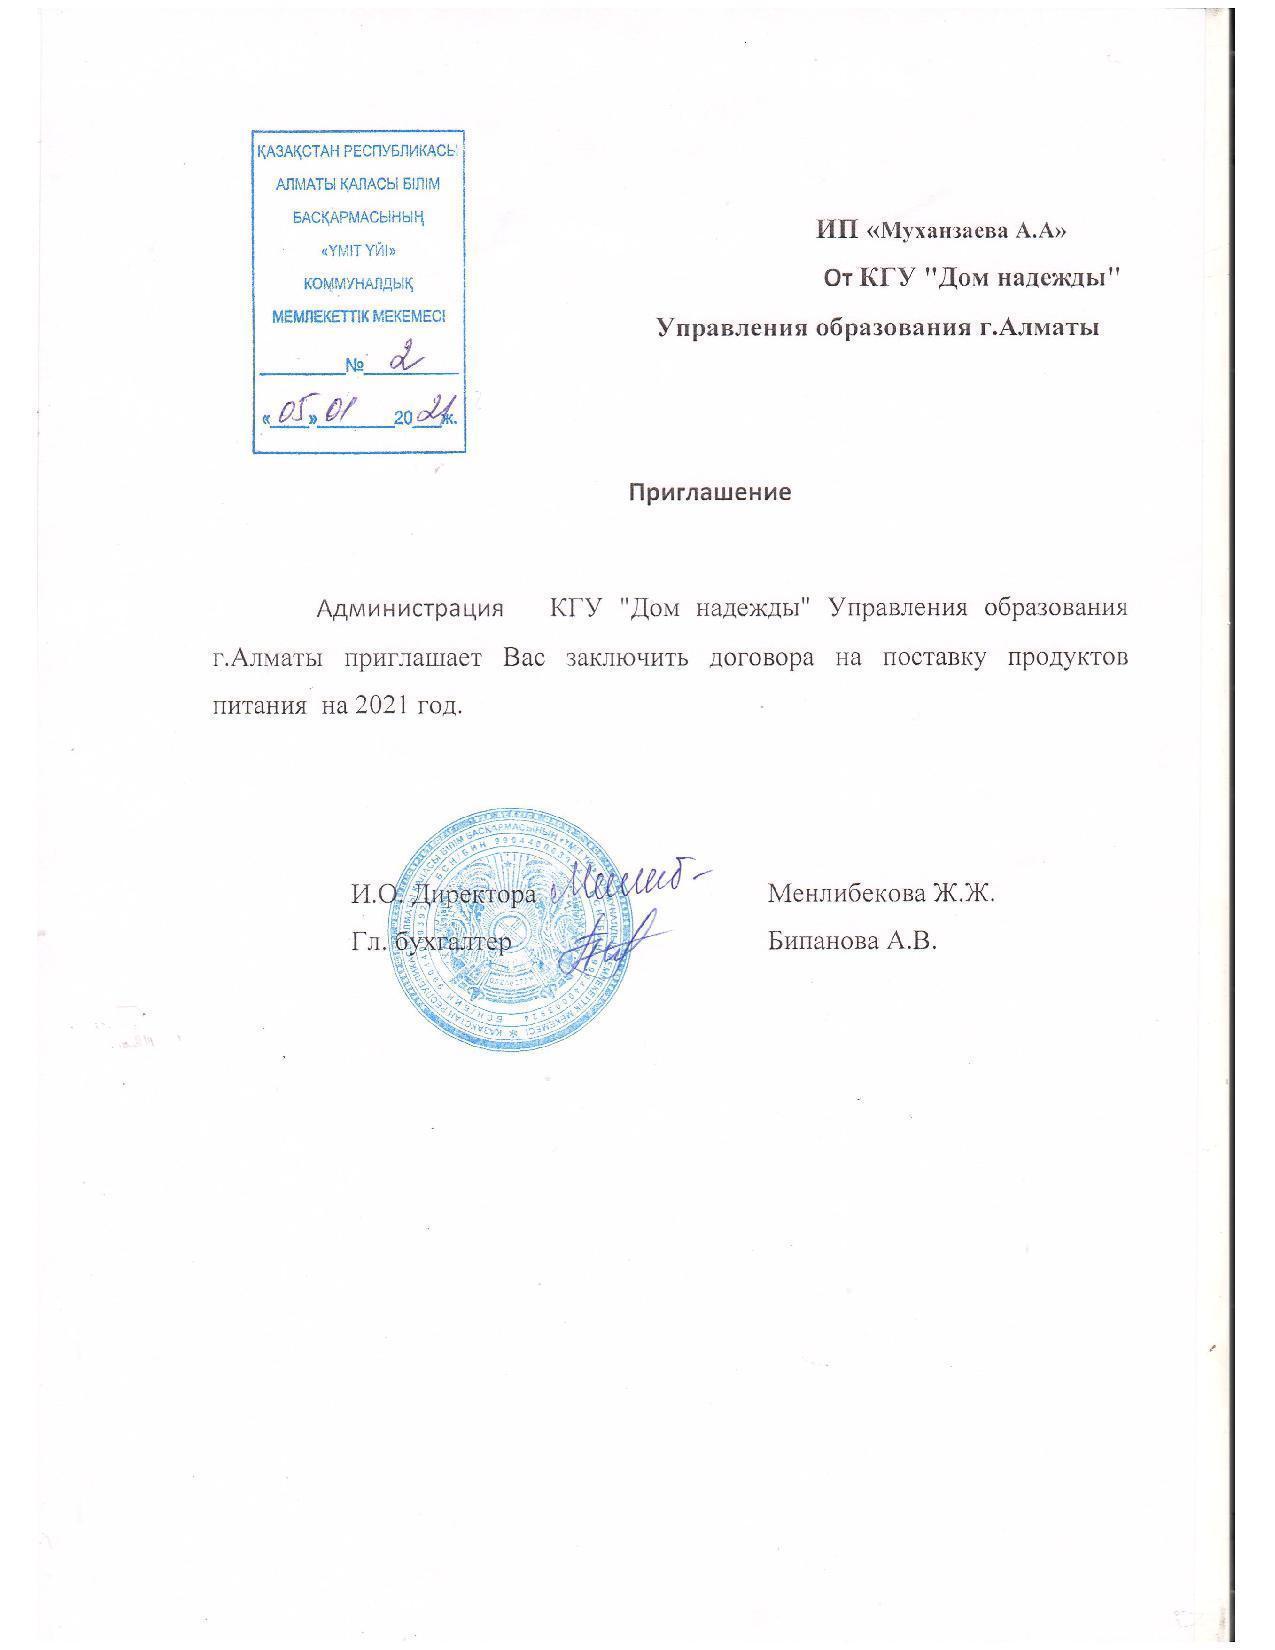 Приглашение и ответное письмо ИП Муханзаева